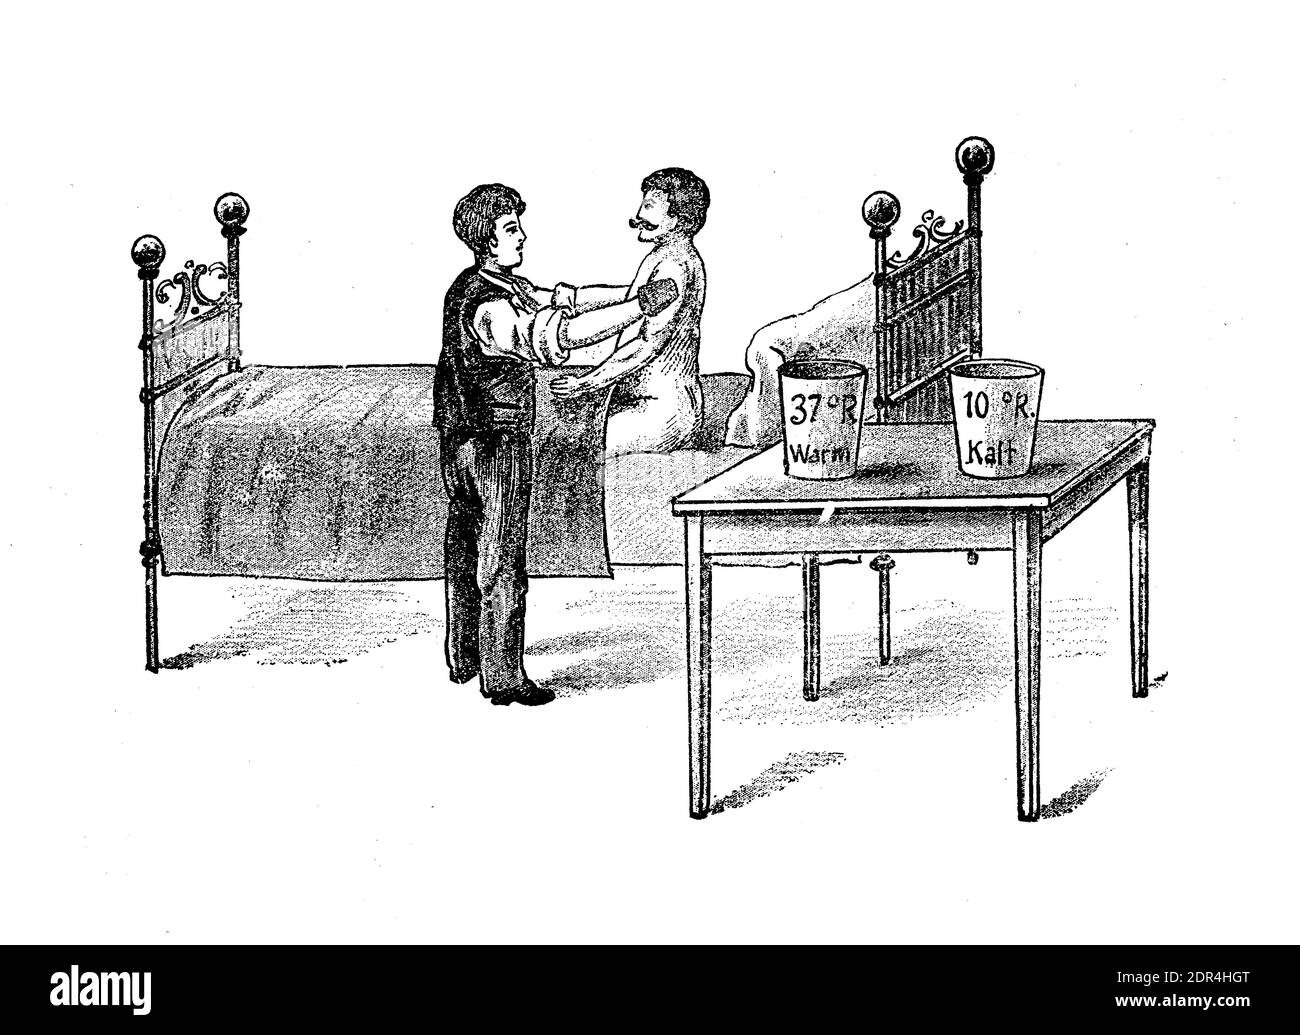 Terapia di contrasto: Uomo che prende un trattamento di sfregamento di rischio del corpo alternando più volte acqua calda e fredda, illustrazione del 19 ° secolo Foto Stock